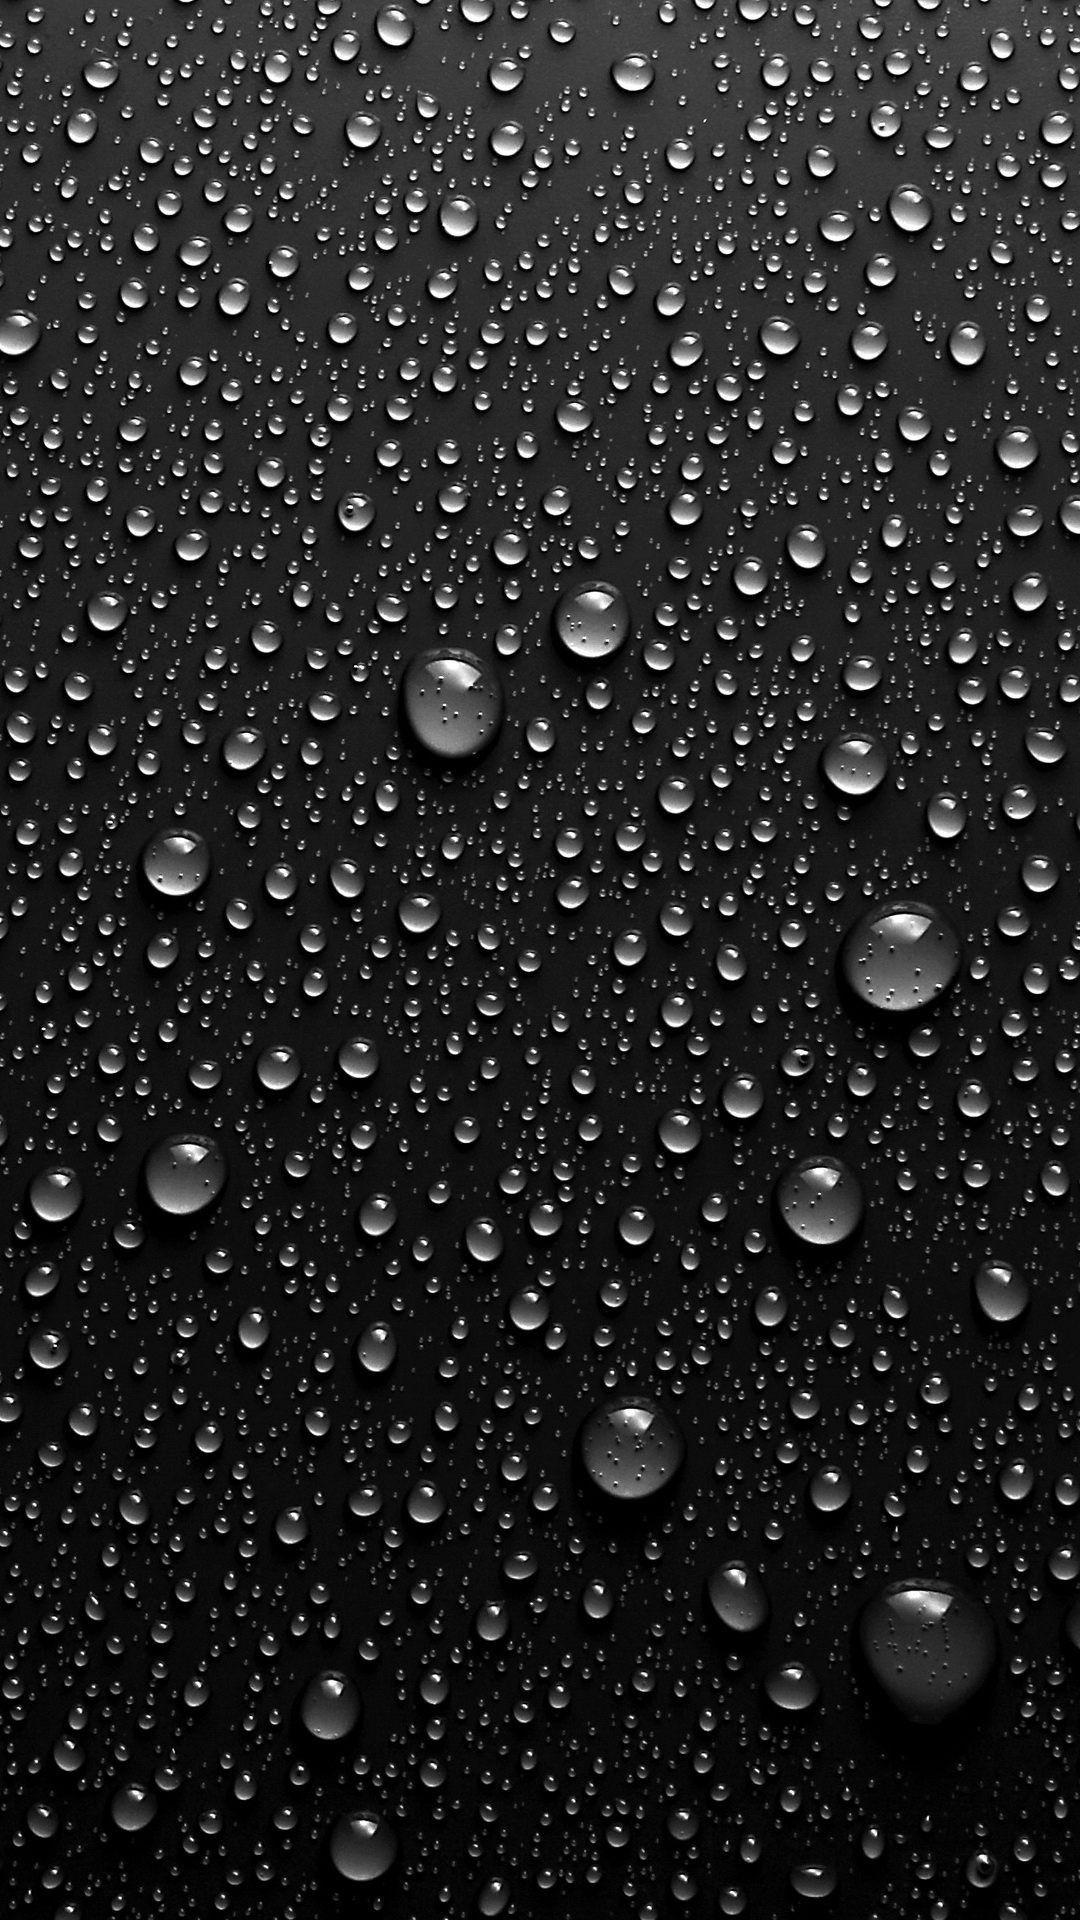 live wallpaper nero,far cadere,umidità,acqua,rugiada,pioggerella